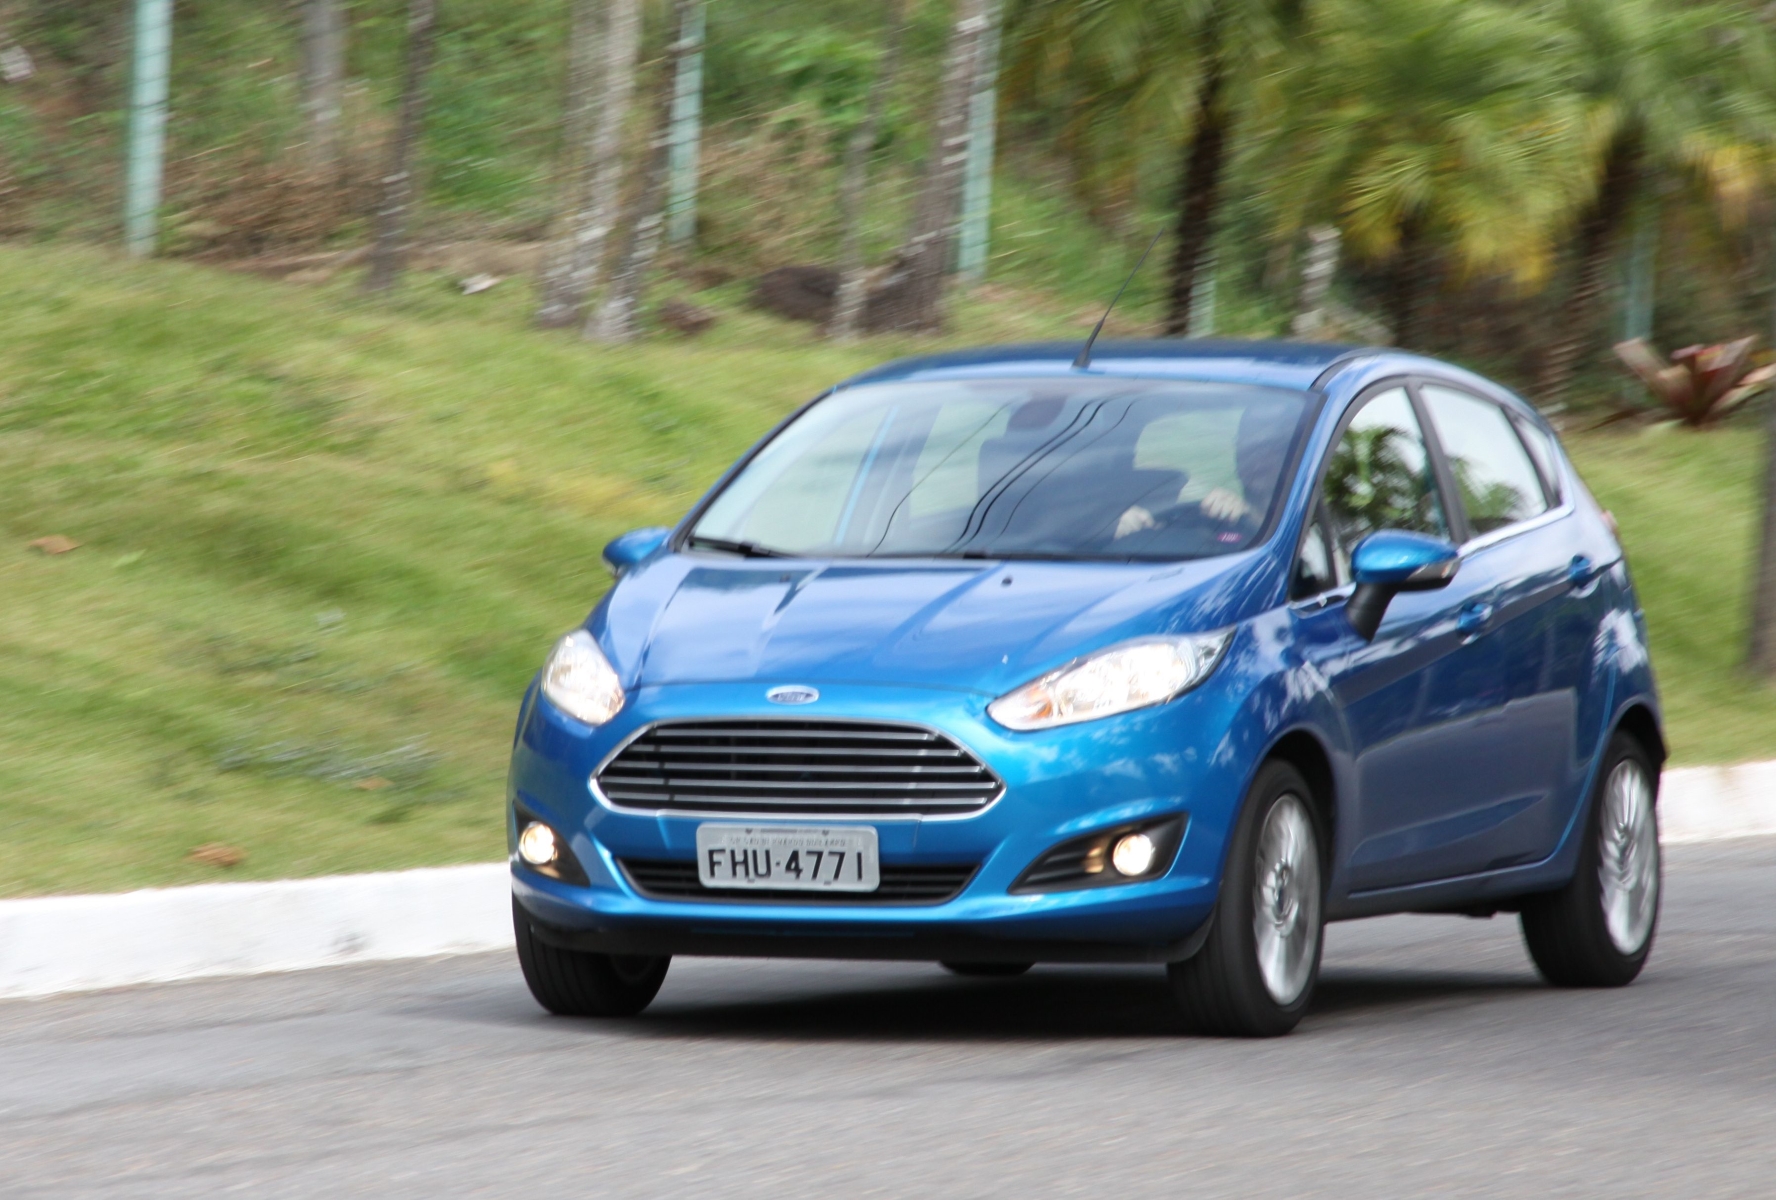 O New Fiesta 2014 já era produzido no Brasil e alcançou o status de hatch premium -  (crédito: O New Fiesta 2014 já era produzido no Brasil e alcançou o status de hatch premium)